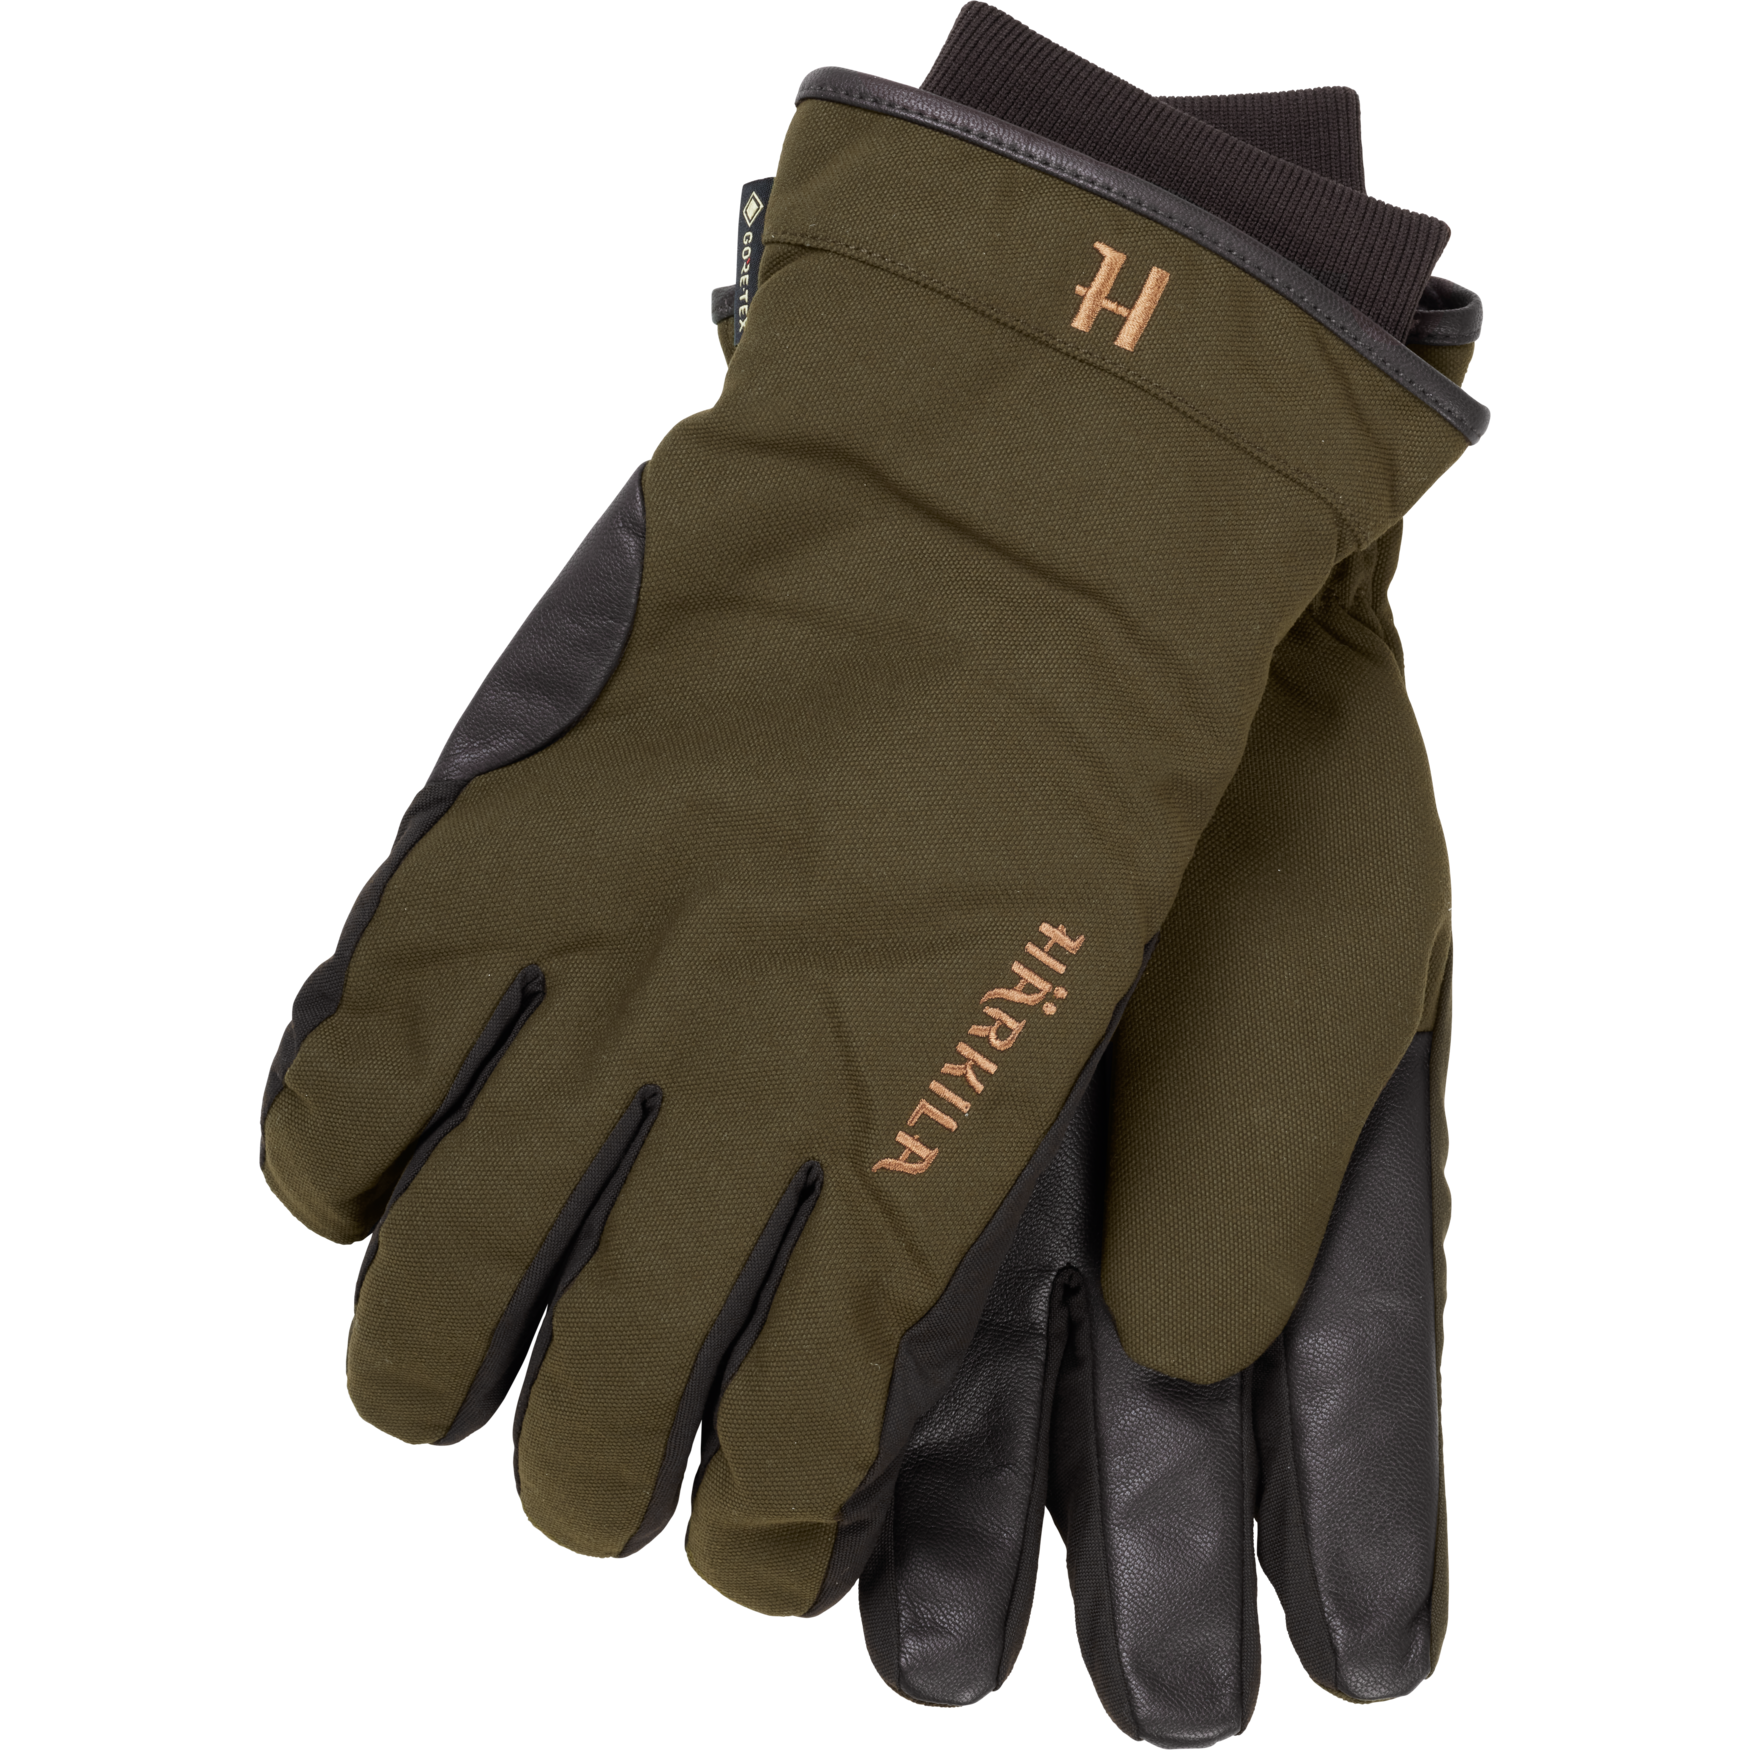 Gants de chasse pour homme - Légers - Sans doigts - Antidérapants -  Respirants - Pour écran tactile - Pour la pêche, la randonnée, la chasse 